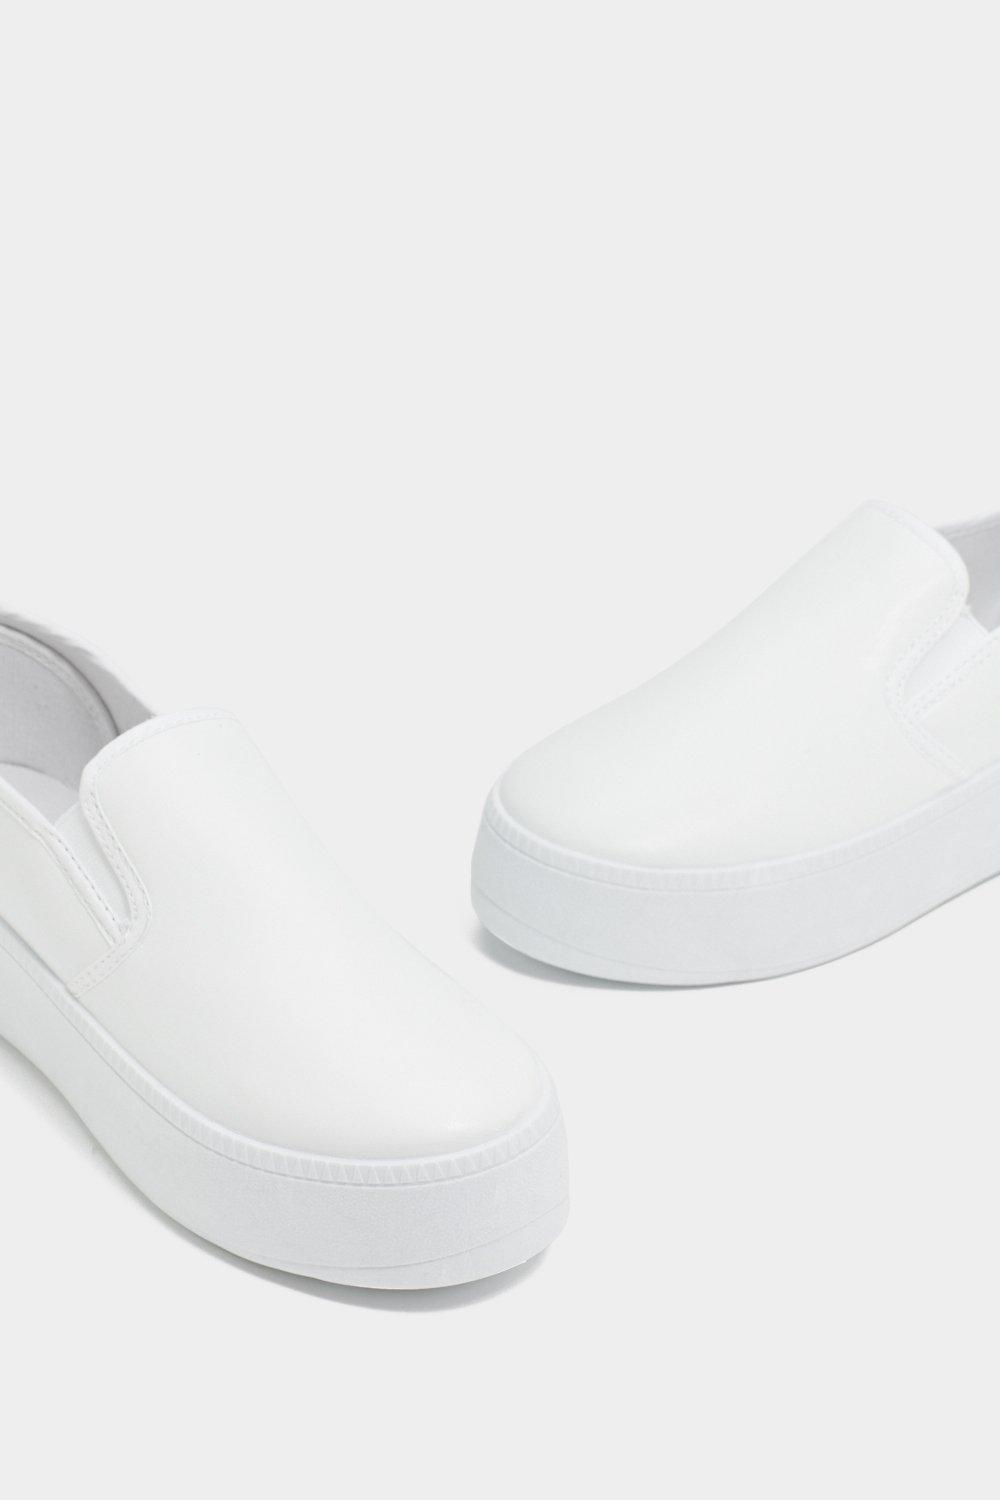 platform slip on sneakers white